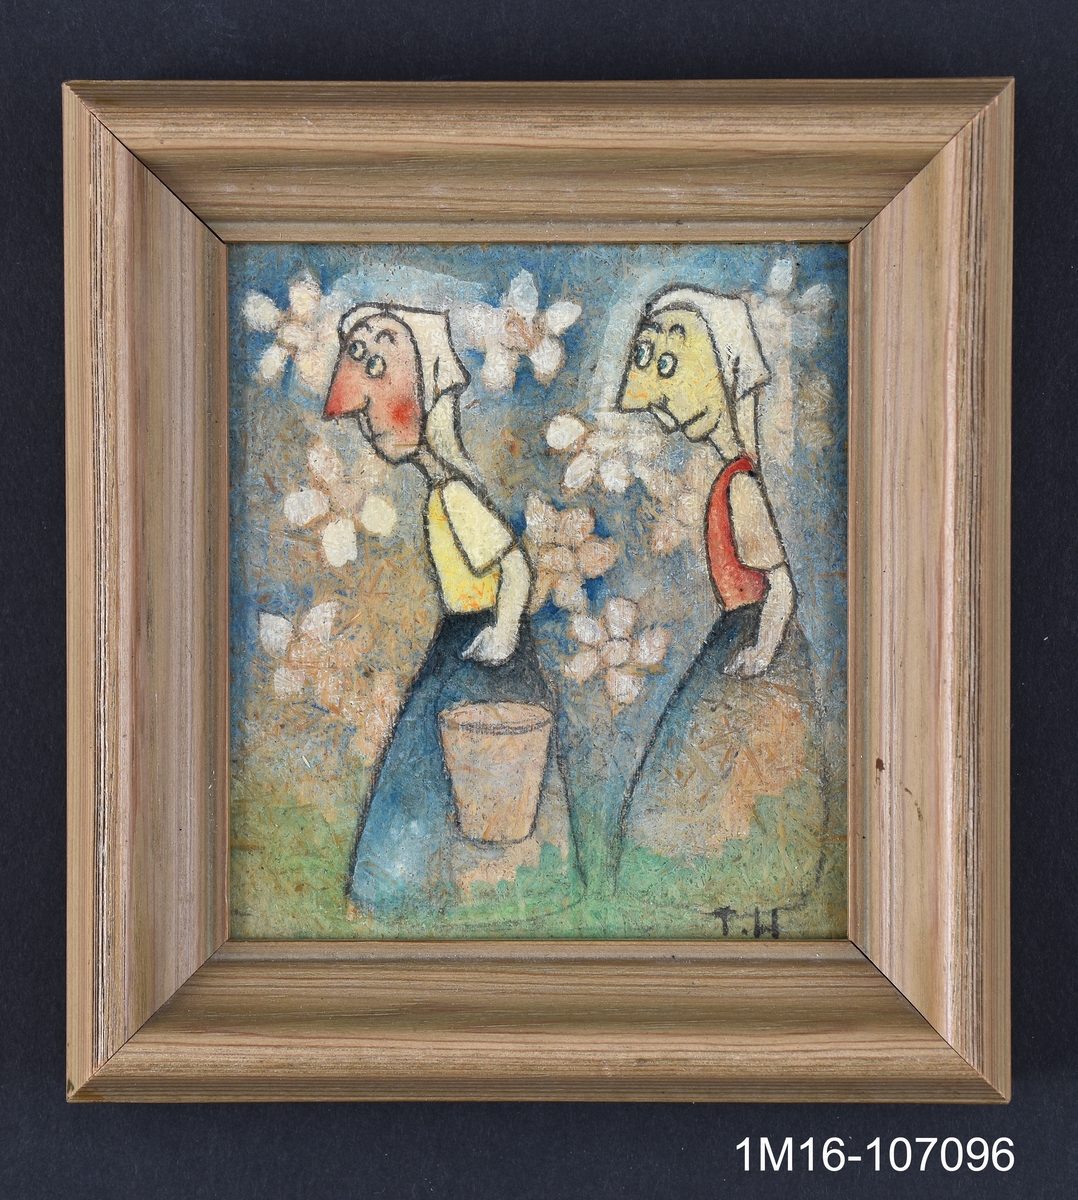 Två kvinnor bär på hinkar. I bakgrunden vita blommor. Tavlan målad på en träfiberskiva.